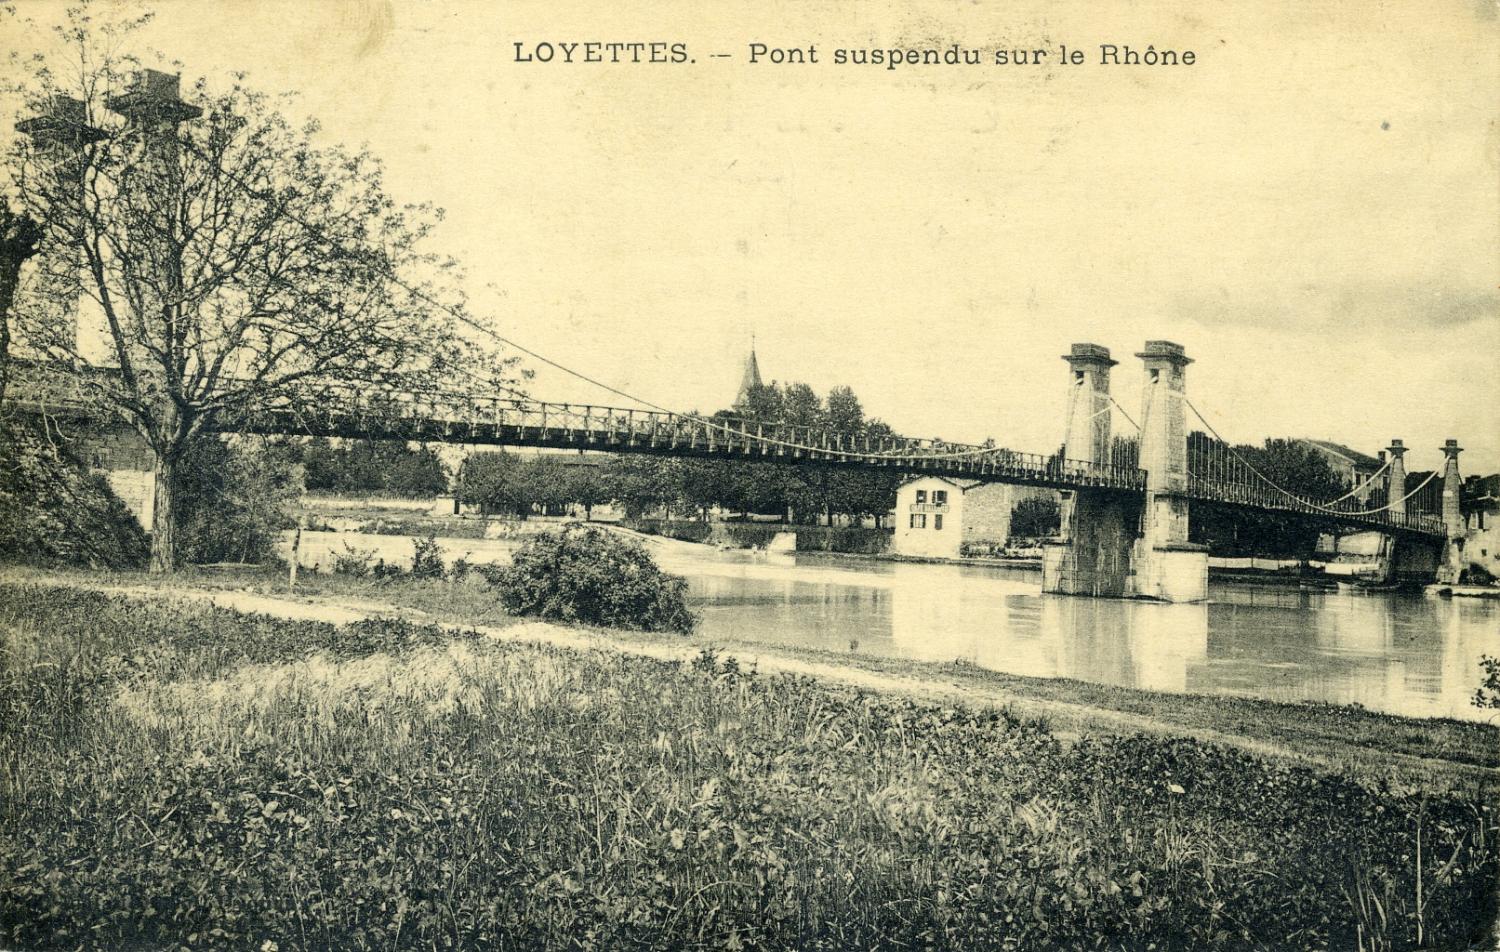 Loyettes - Pont suspendu sur le Rhône.